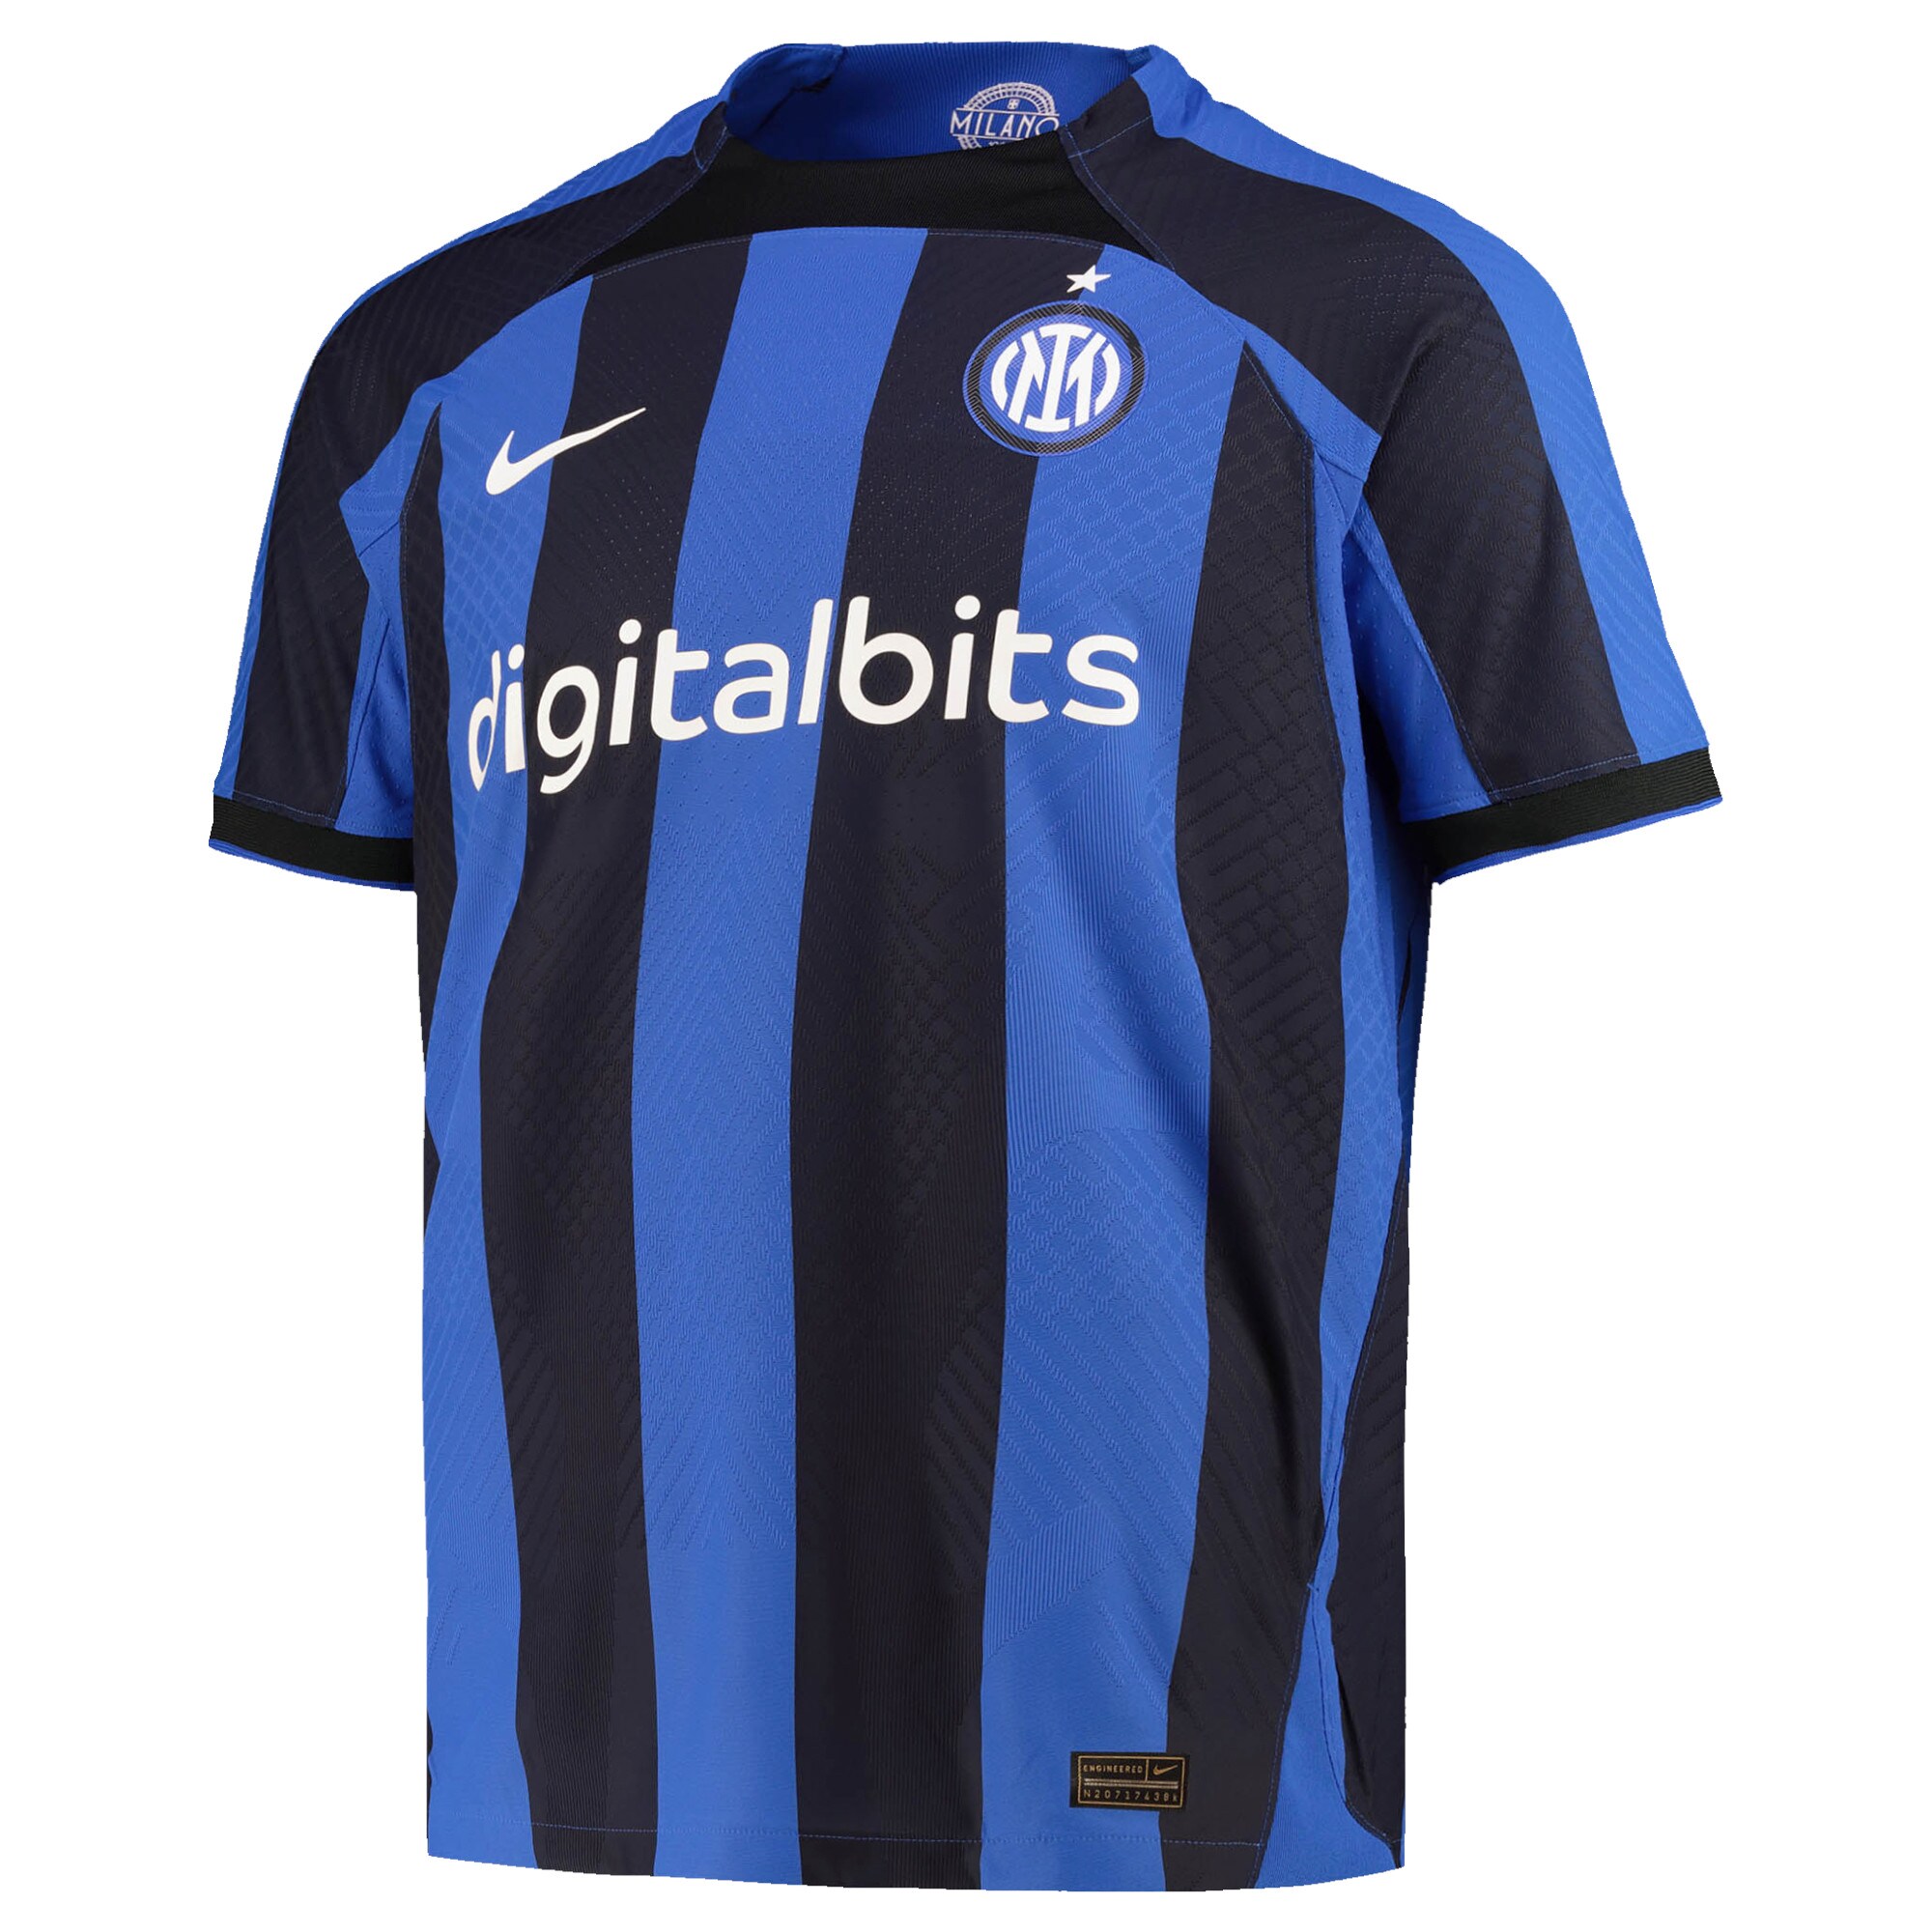 Inter Milan Home Vapor Match Shirt 2022-23 with Barella 23 printing